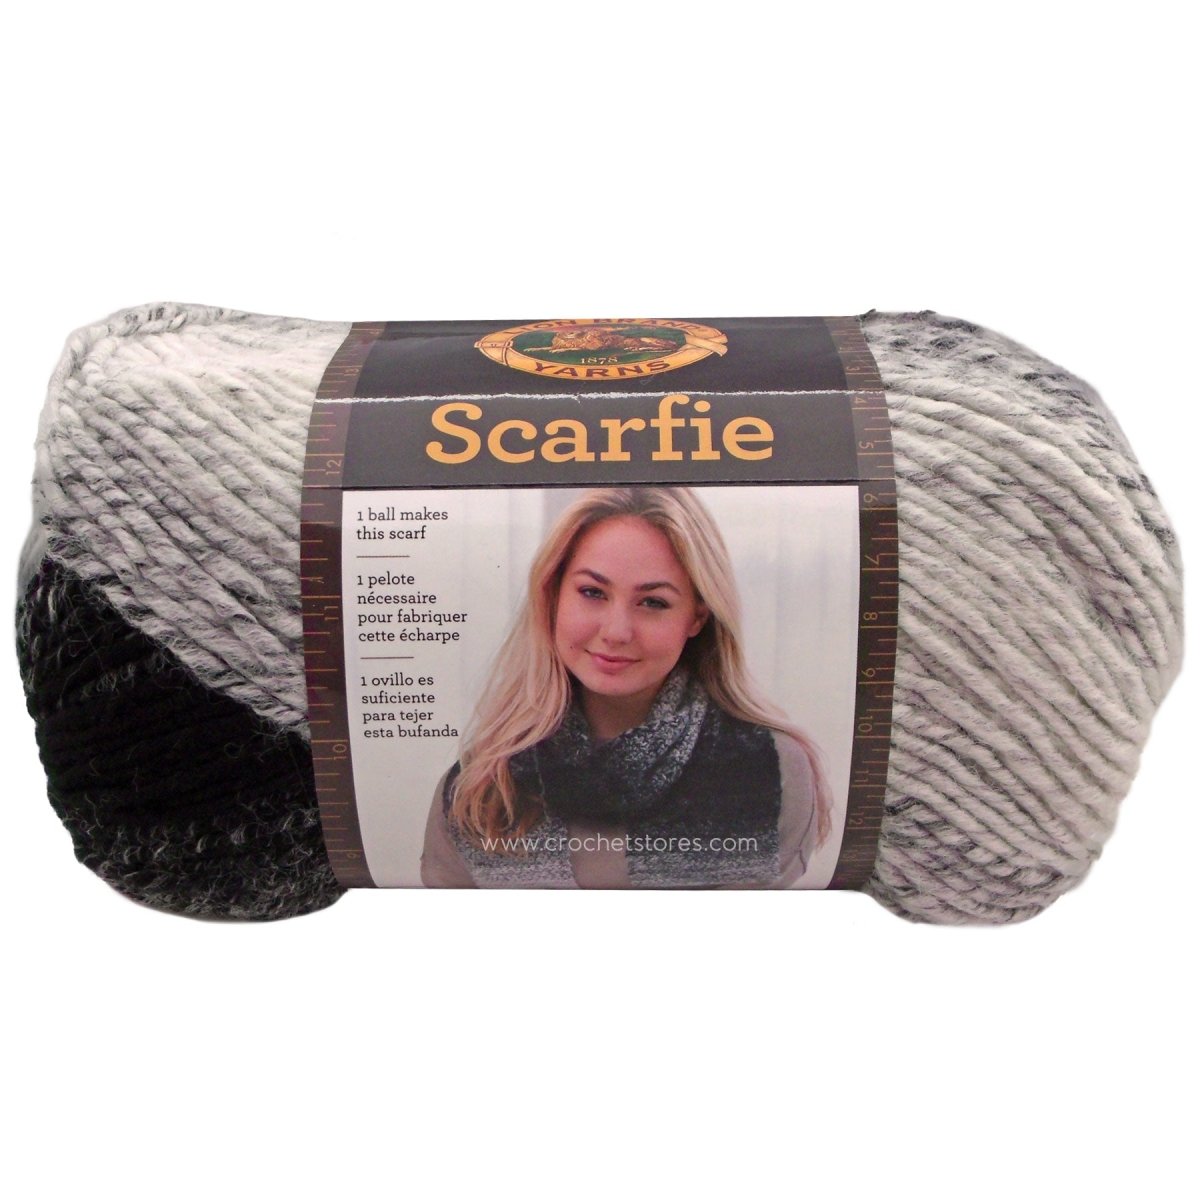 SCARFIE - Crochetstores826-201